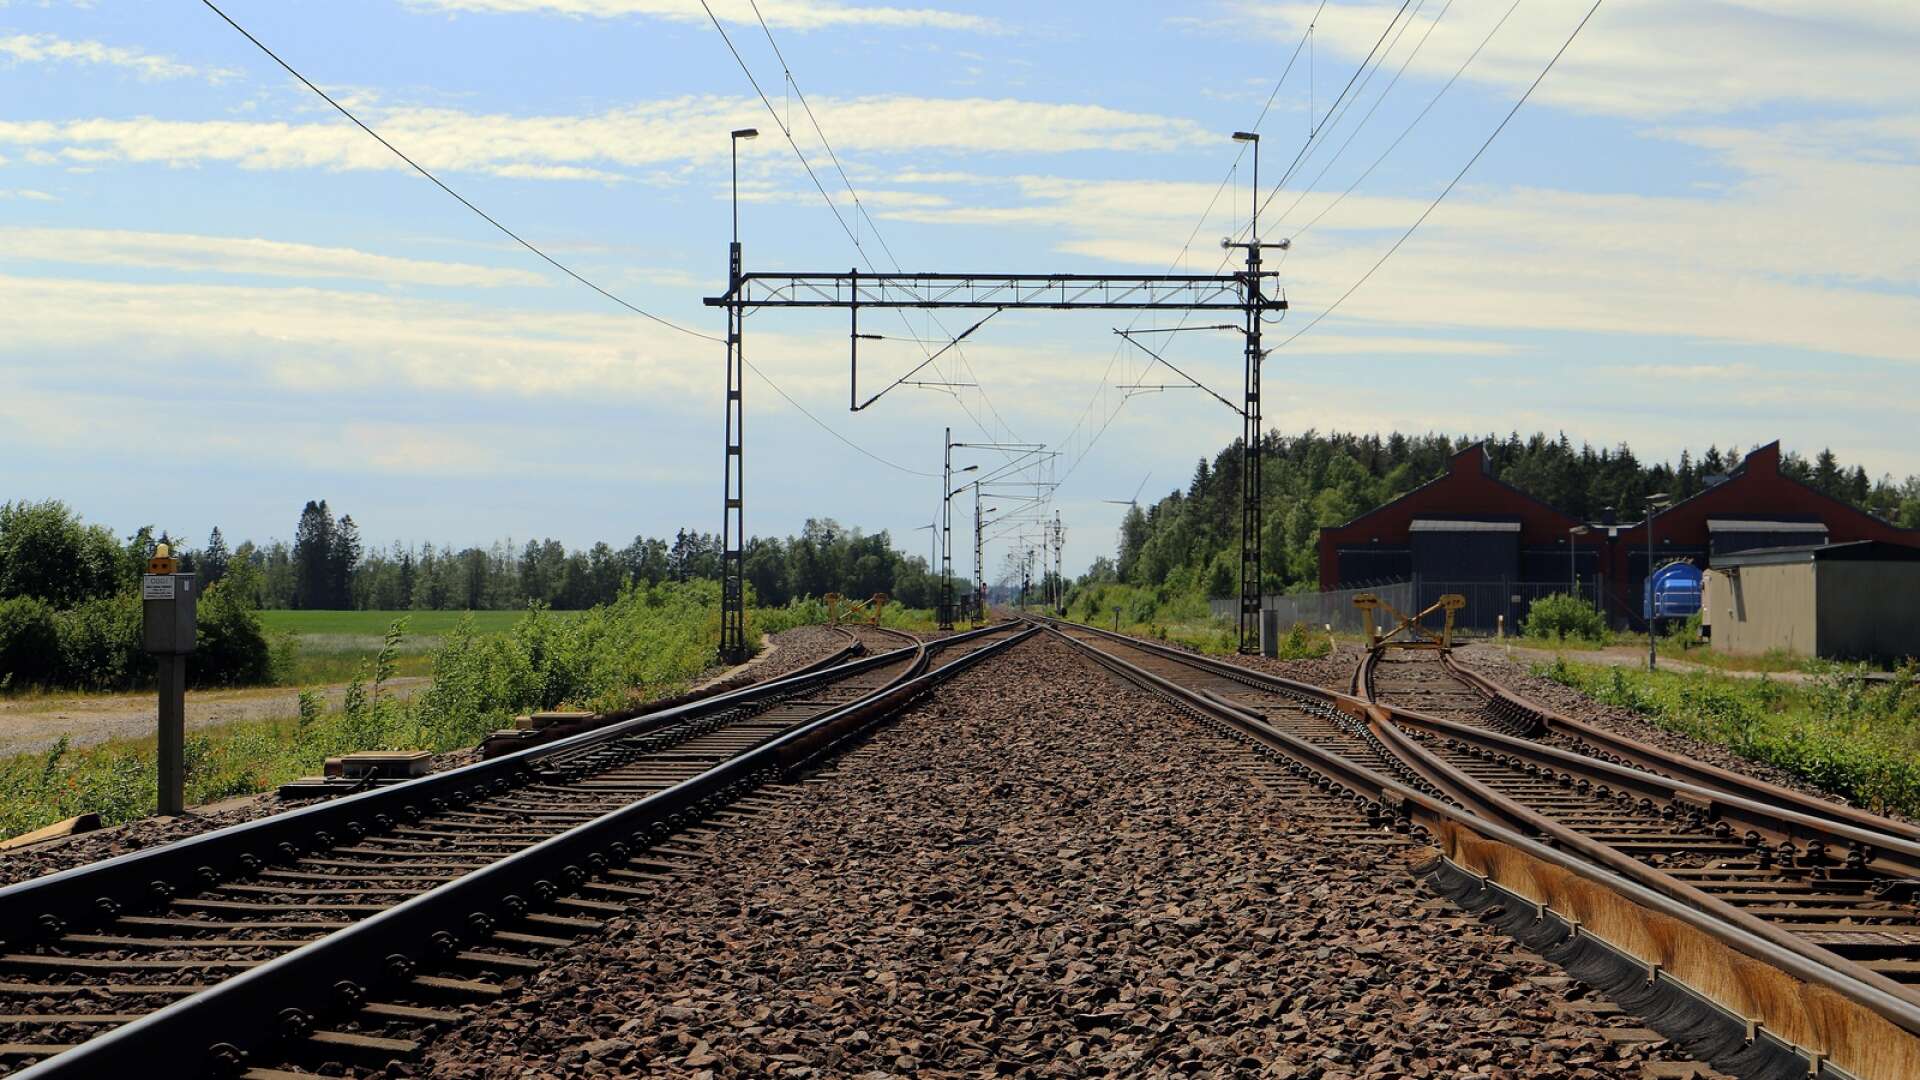 Här vid Erikstad delar sig järnvägen. Till vänster på bilden går Norgebanan via Bäckefors till Ed, Kornsjö och Halden. Spåret rakt fram fortsätter mot Mellerud och Åmål.